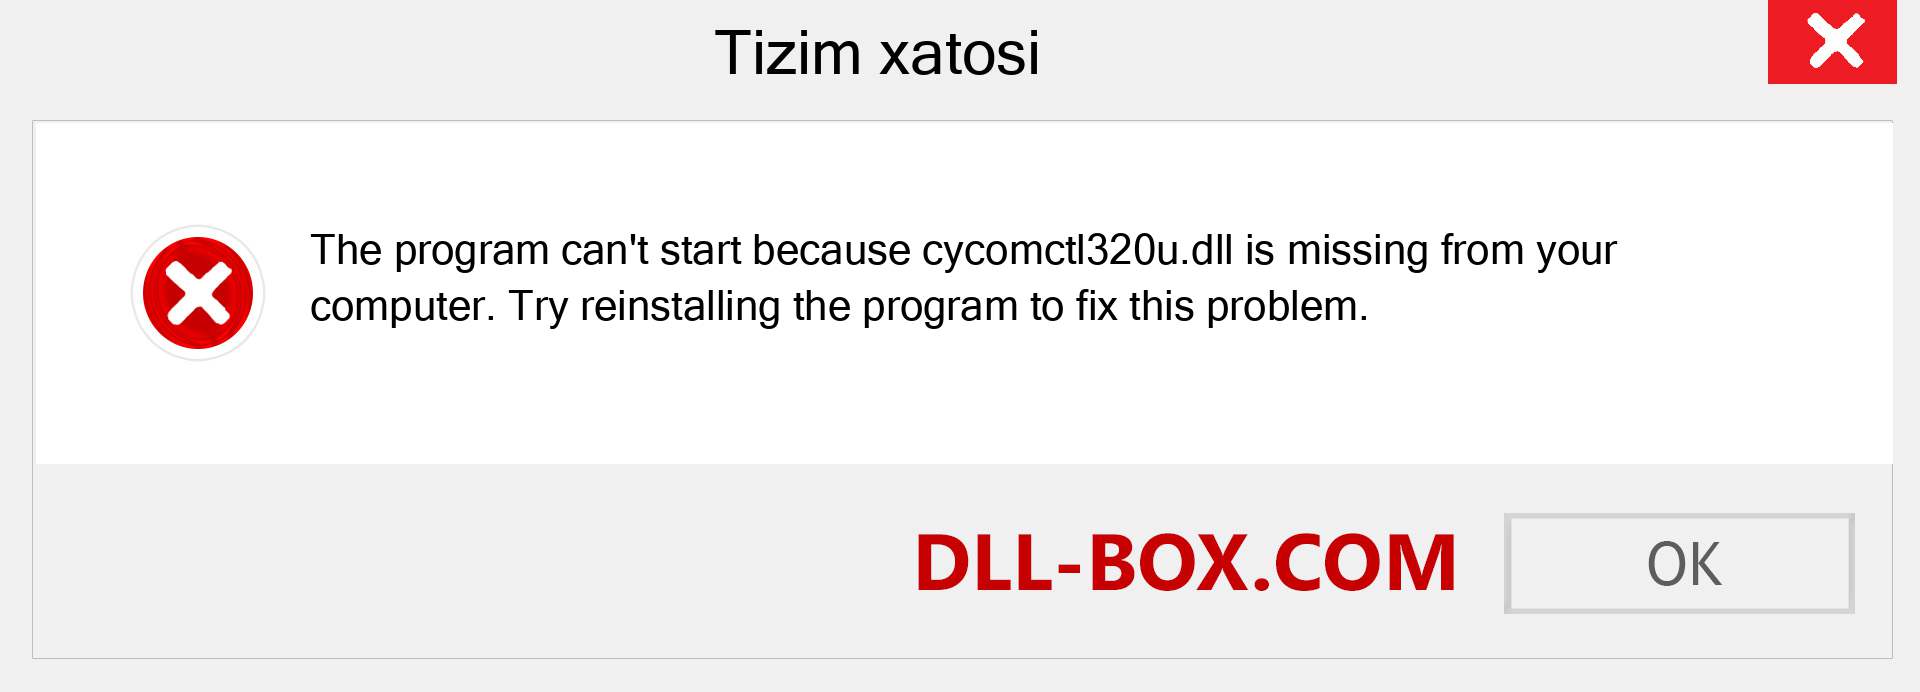 cycomctl320u.dll fayli yo'qolganmi?. Windows 7, 8, 10 uchun yuklab olish - Windowsda cycomctl320u dll etishmayotgan xatoni tuzating, rasmlar, rasmlar